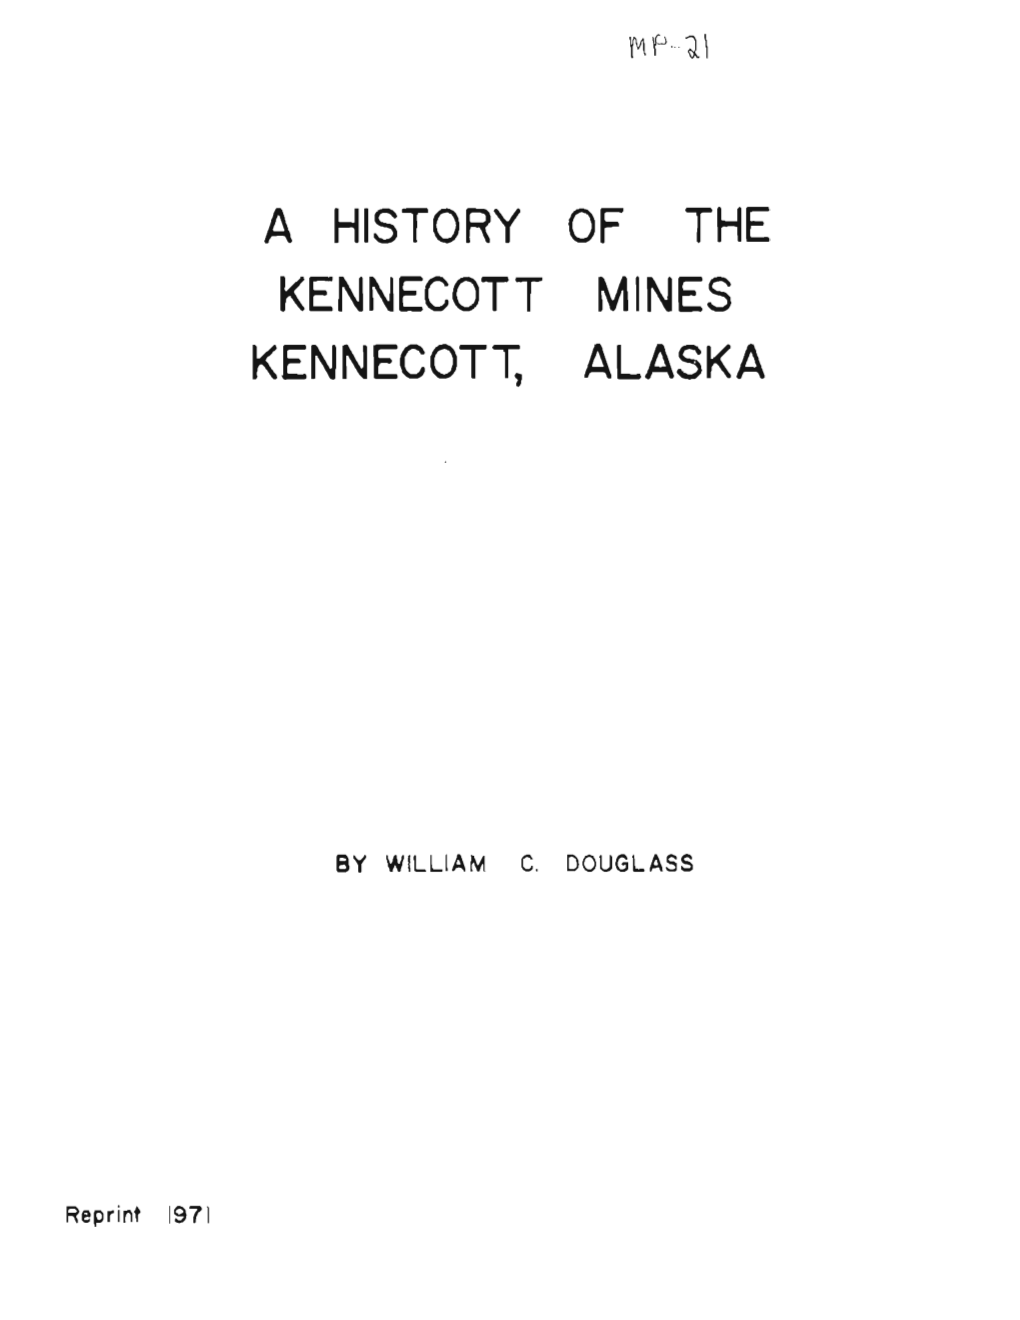 A History of the Kennecott Mines Kennecott, Alaska